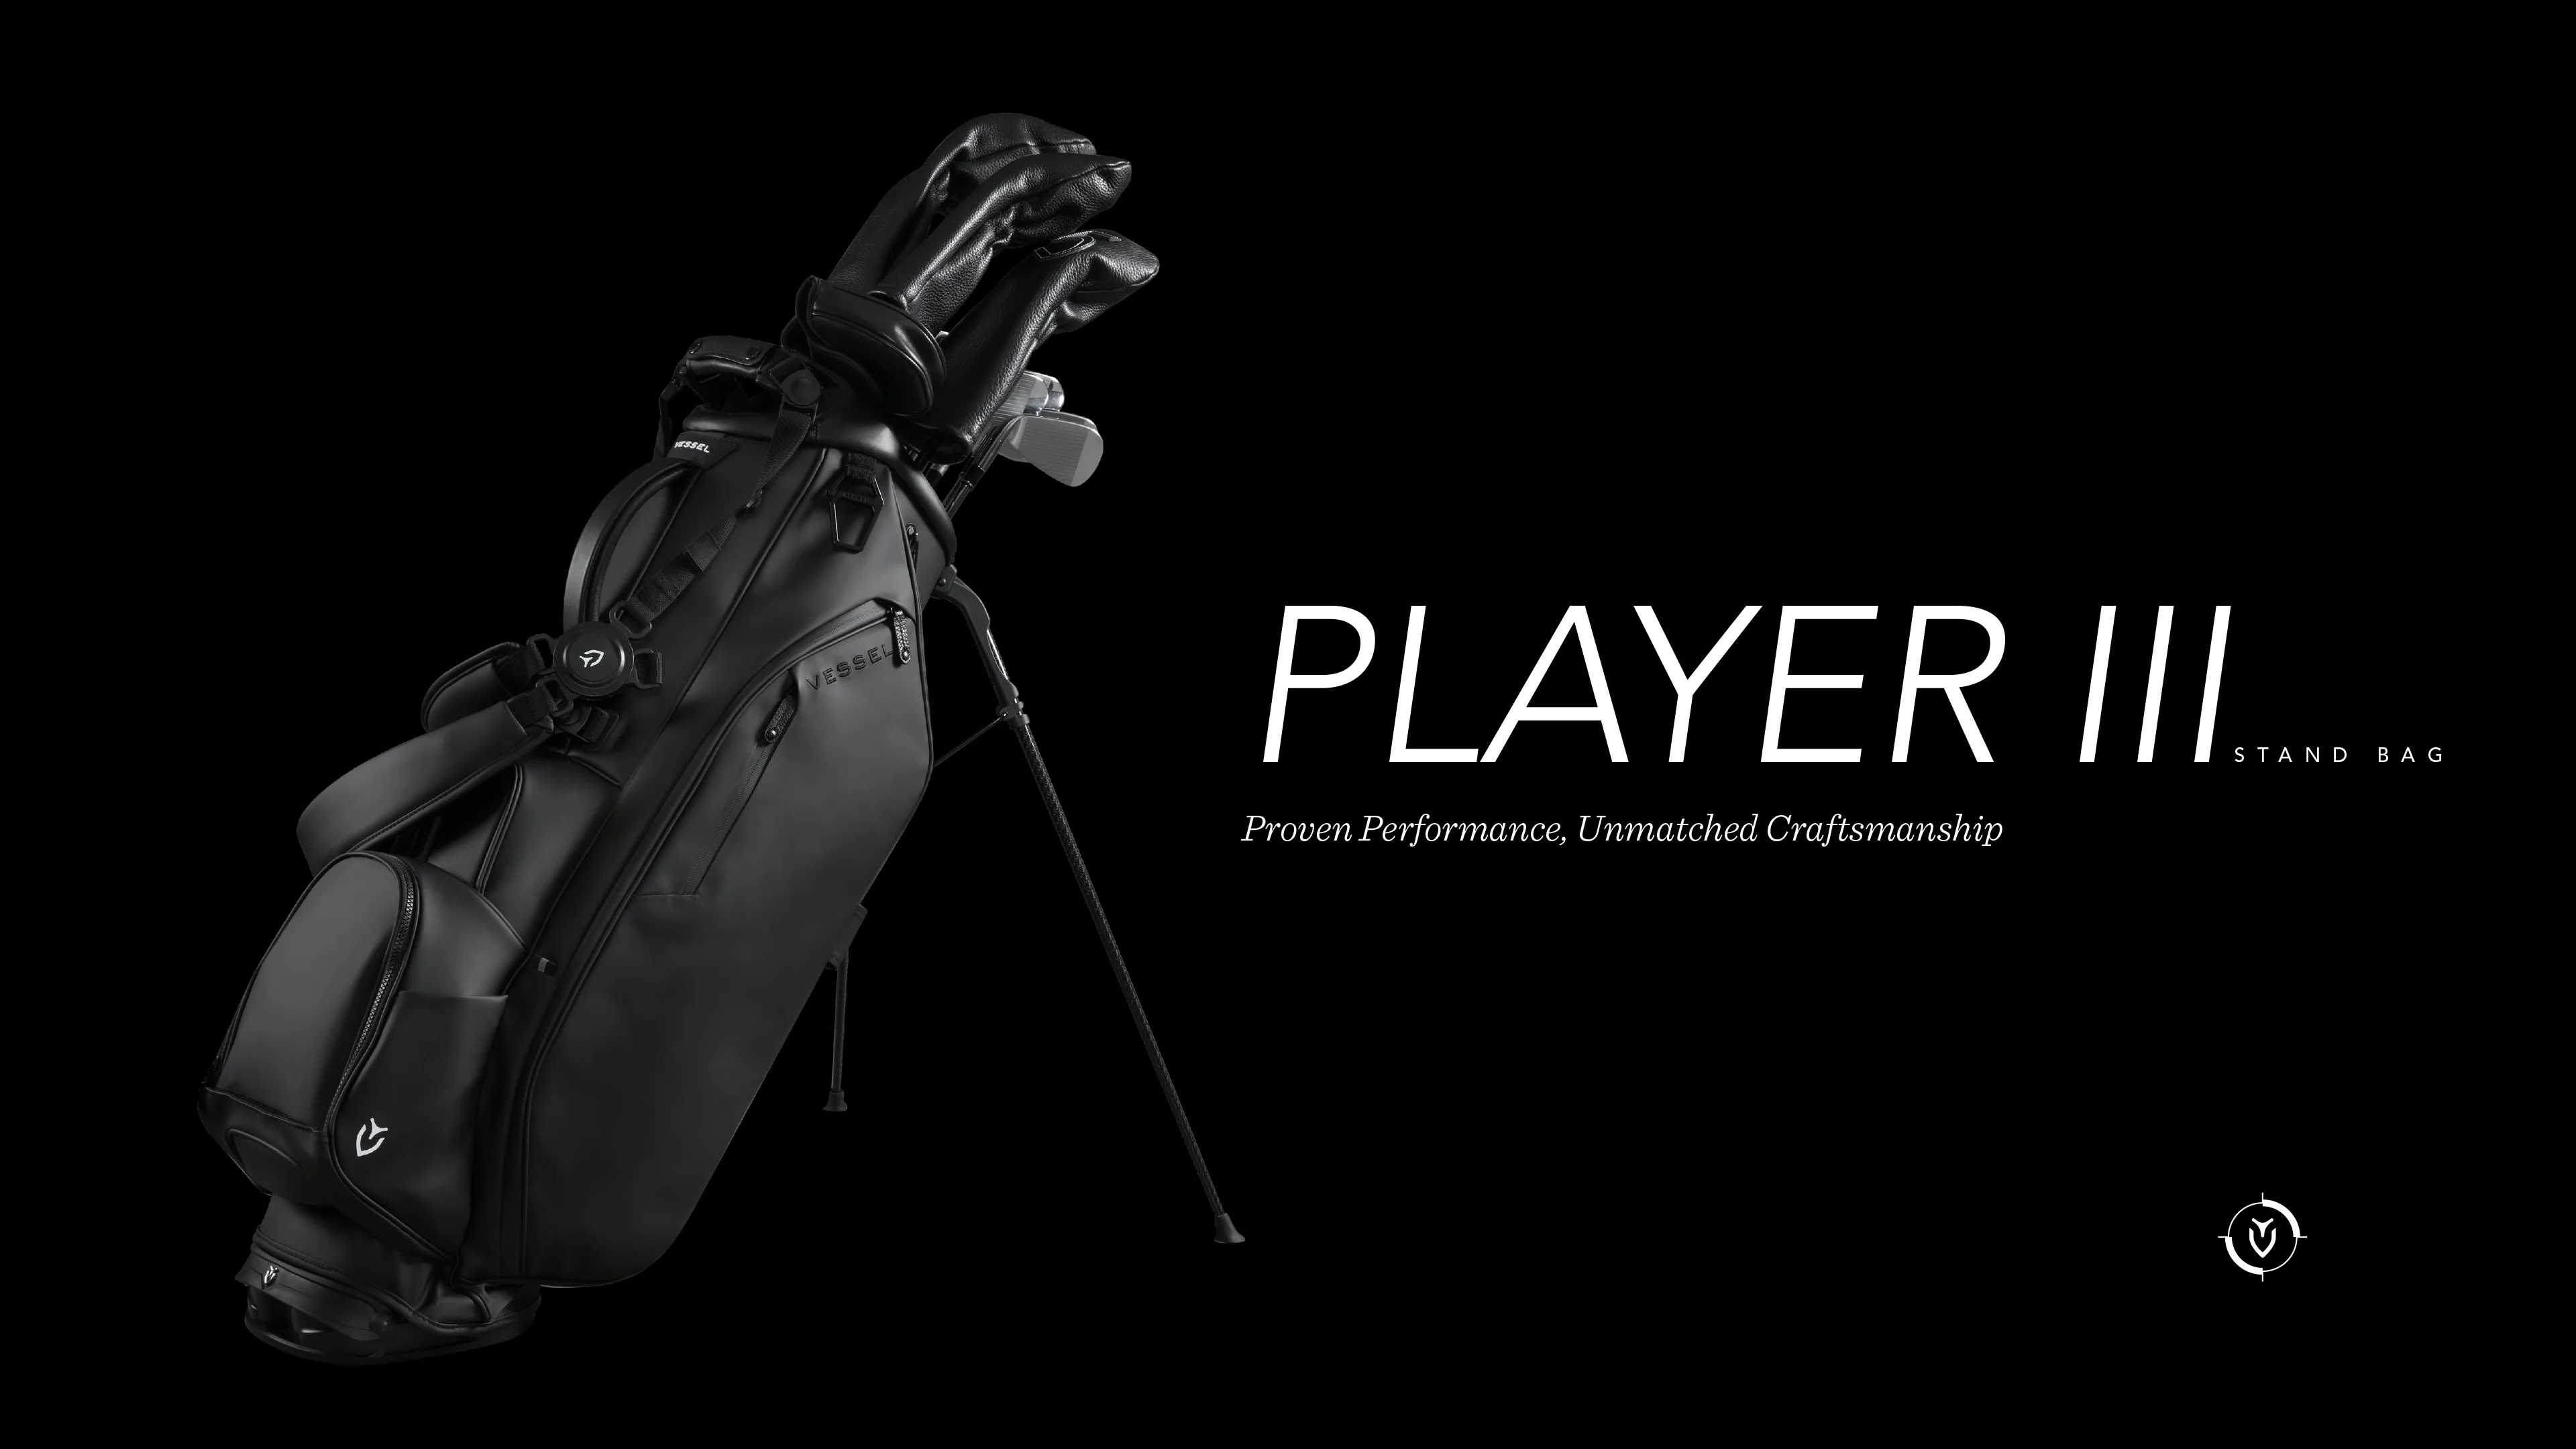 The Player III Stand Bag on Vimeo